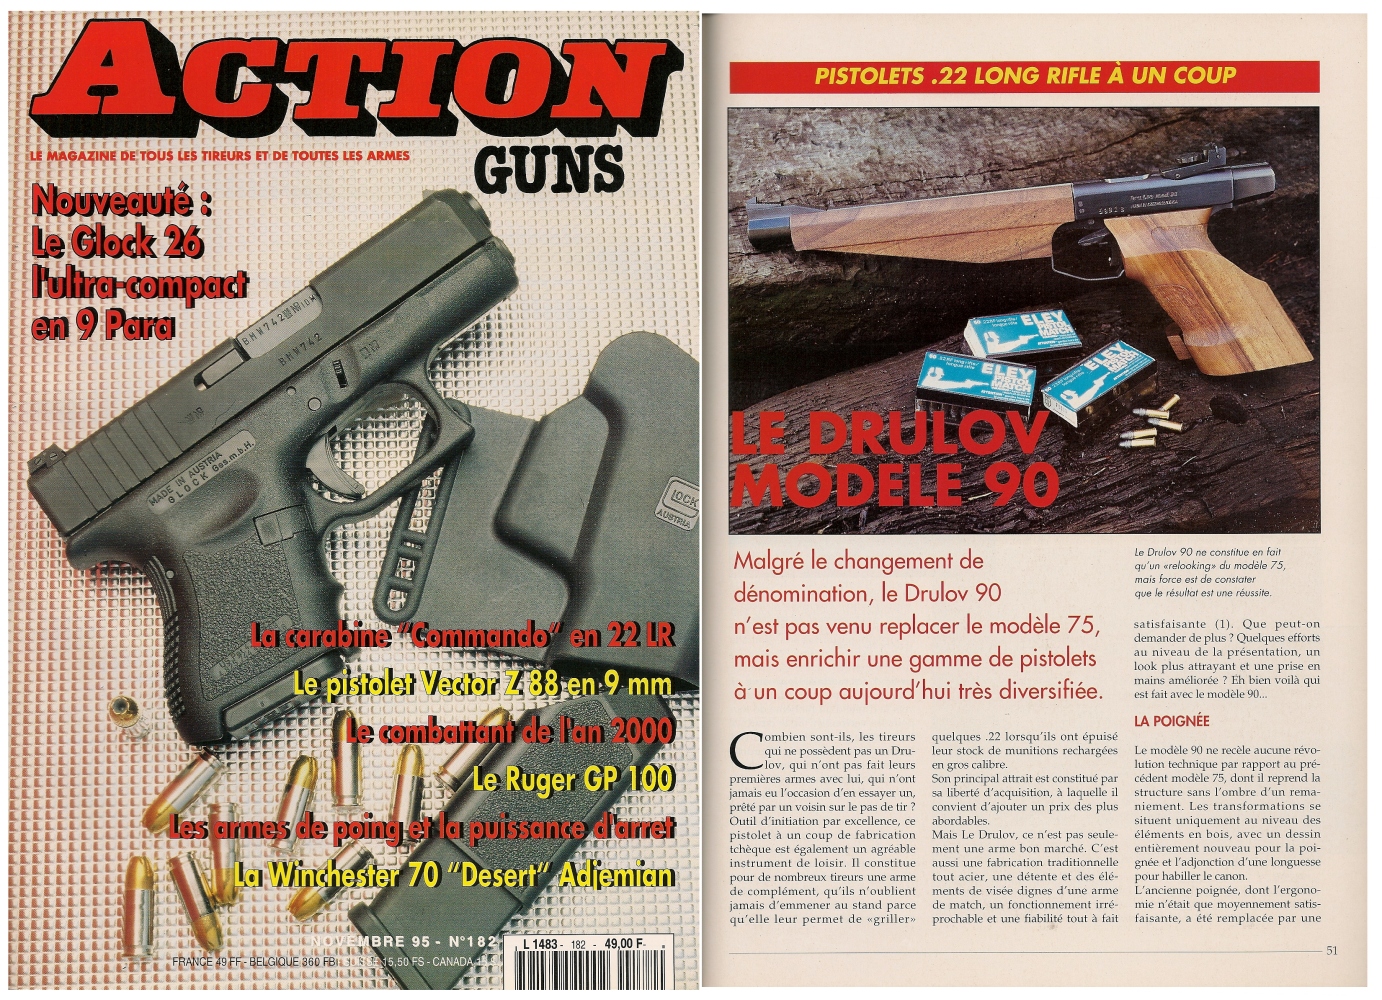 Le banc d’essai du pistolet Drulov modèle 90 a été publié sur 5 pages dans le magazine Action Guns n°182 (novembre 1995).